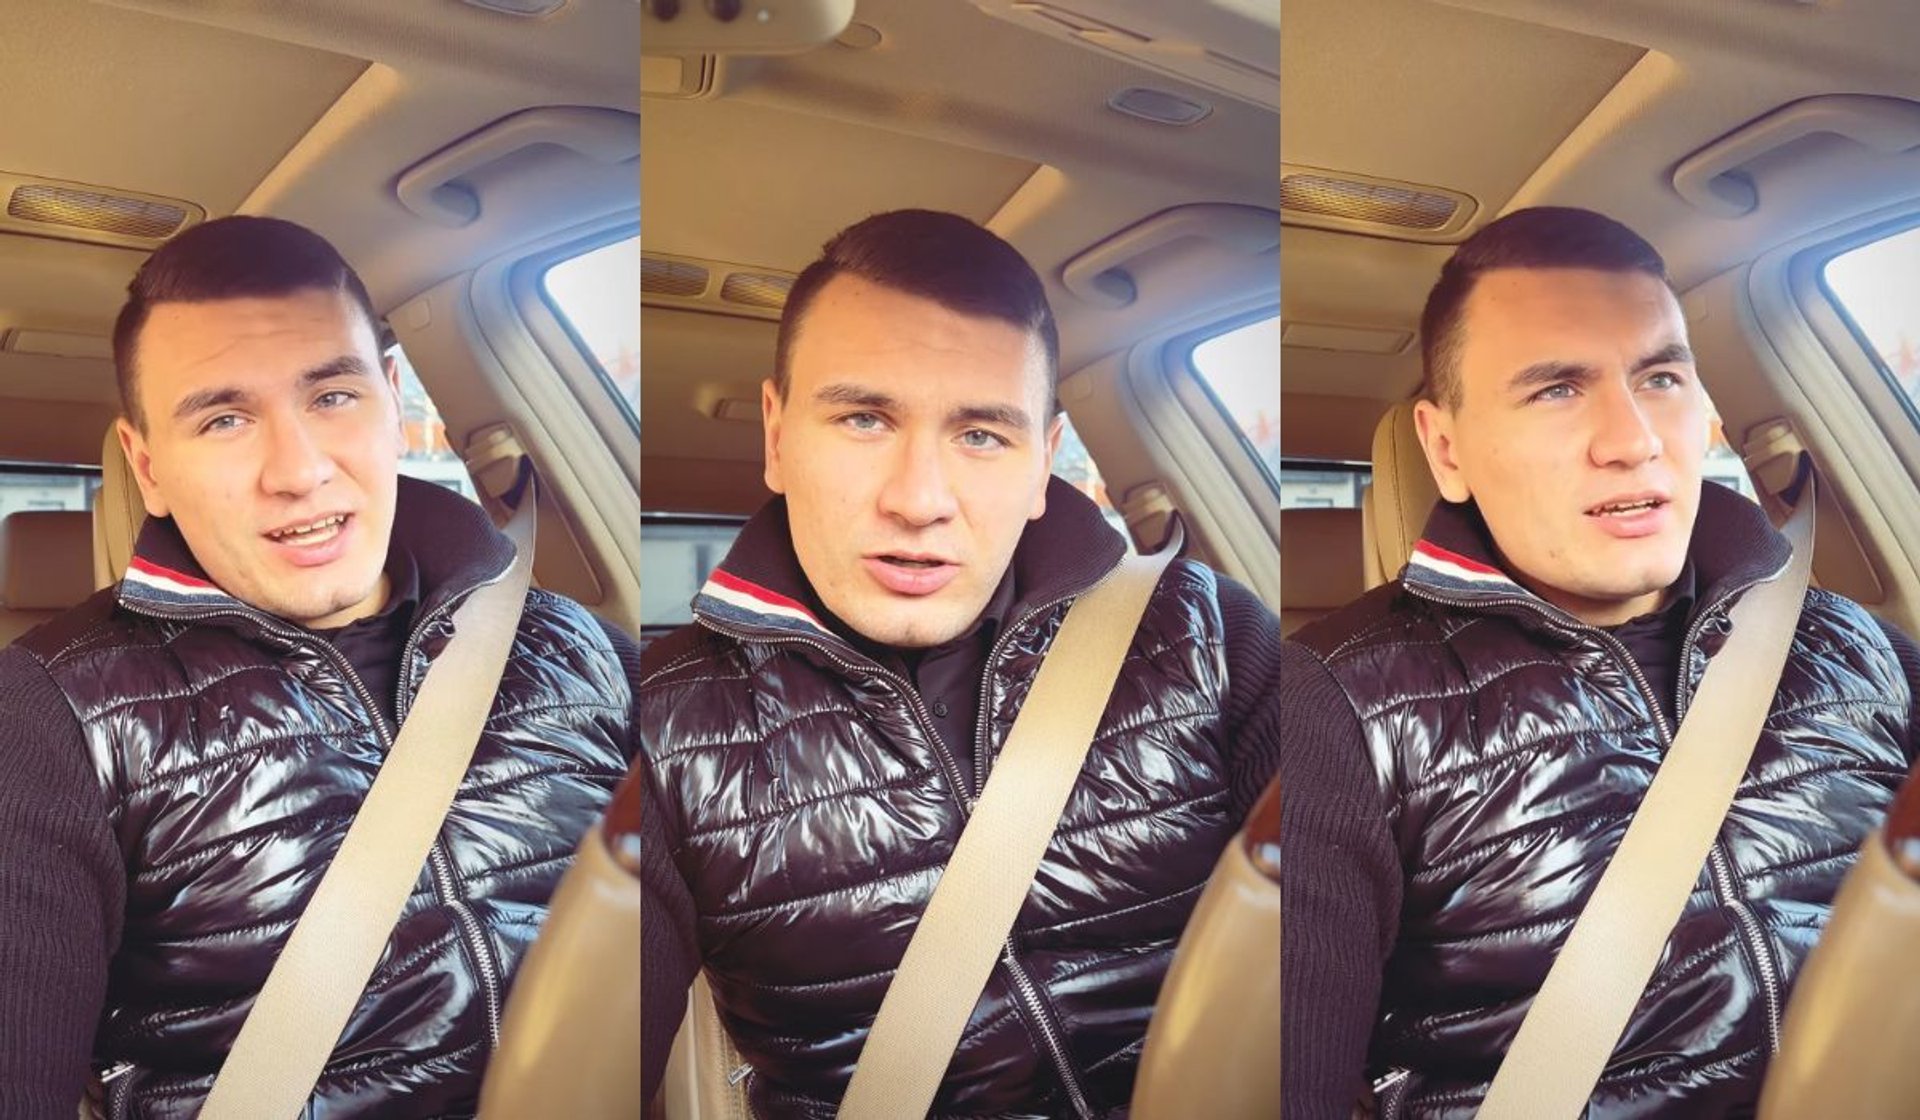 Syn Dagmary Kaźmierskiej przyznał, że jest uzależniony, fot. Instagram/conanbestia